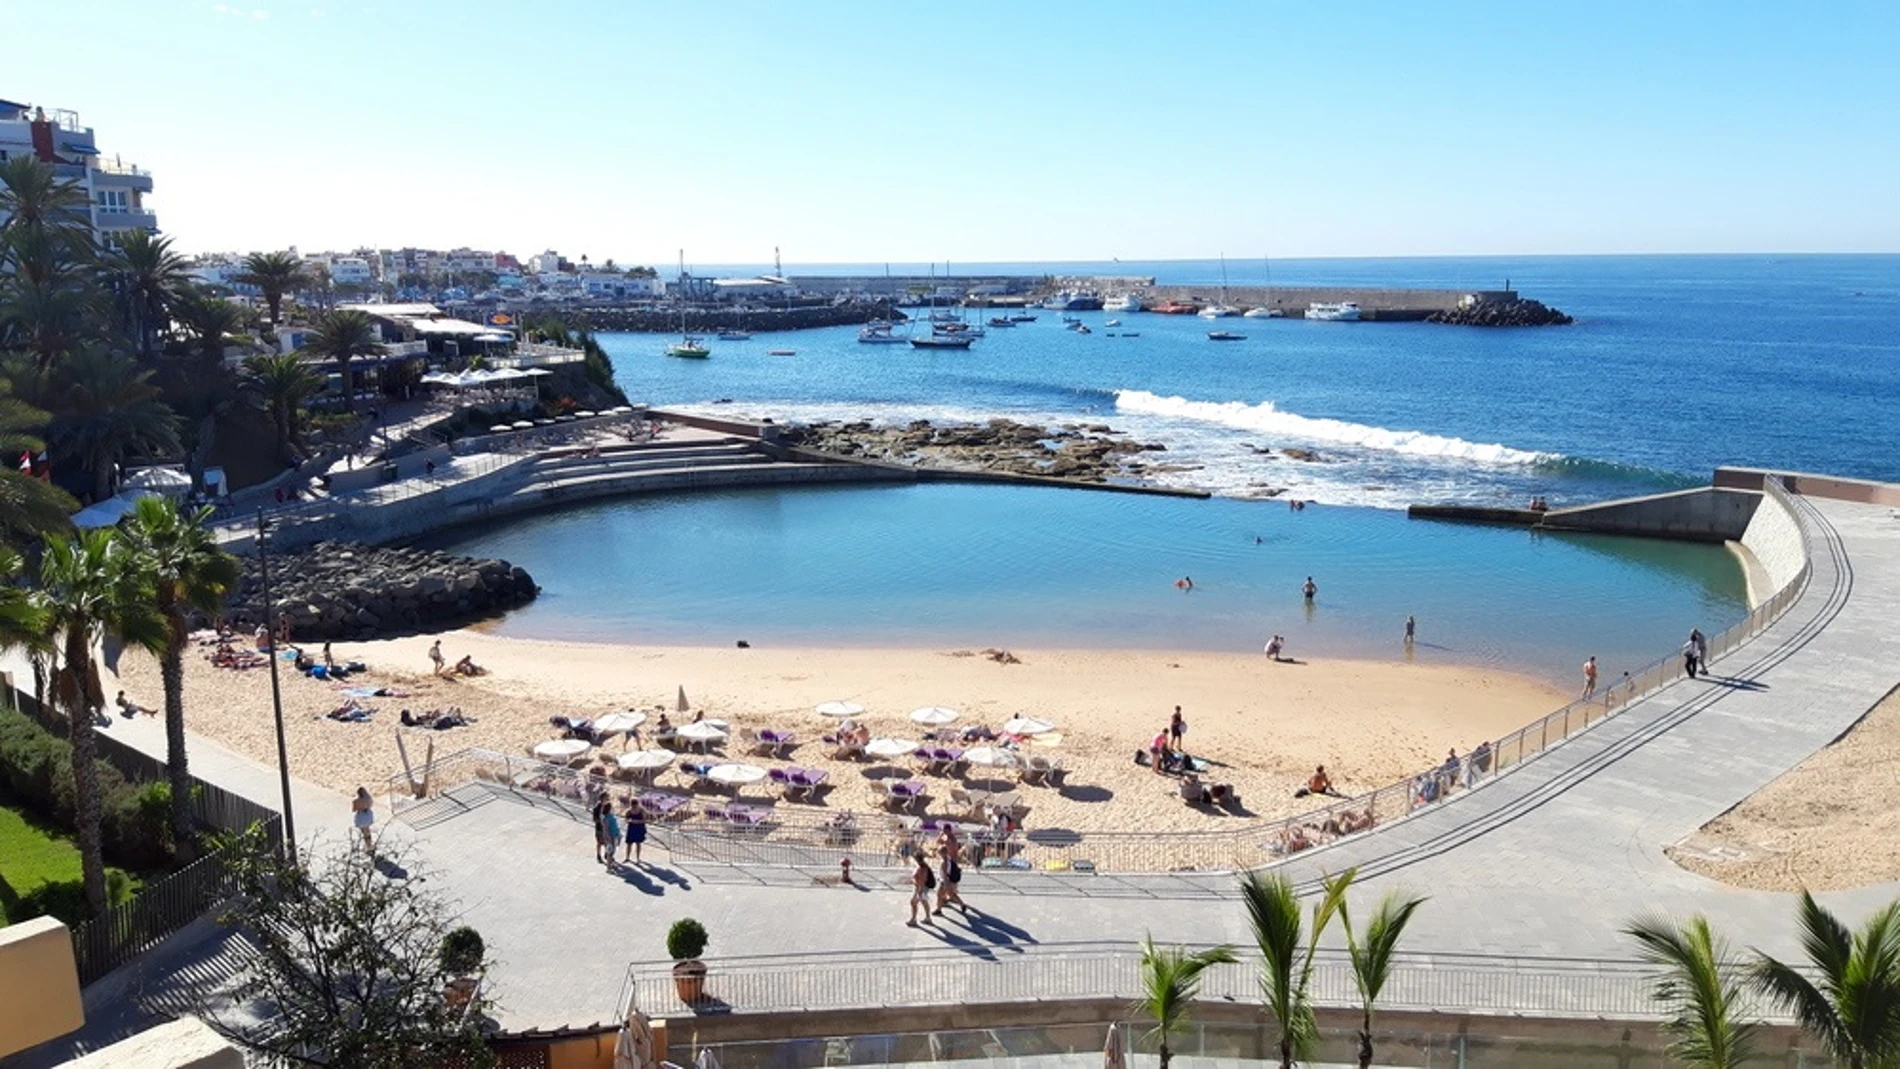 Canarias es uno de los destinos preferidos por los extranjeros. En la imagen la playa de La Lajilla, en MogánCEDIDO POR GOBIERNO DE CANARIAS (Foto de ARCHIVO)01/01/1970